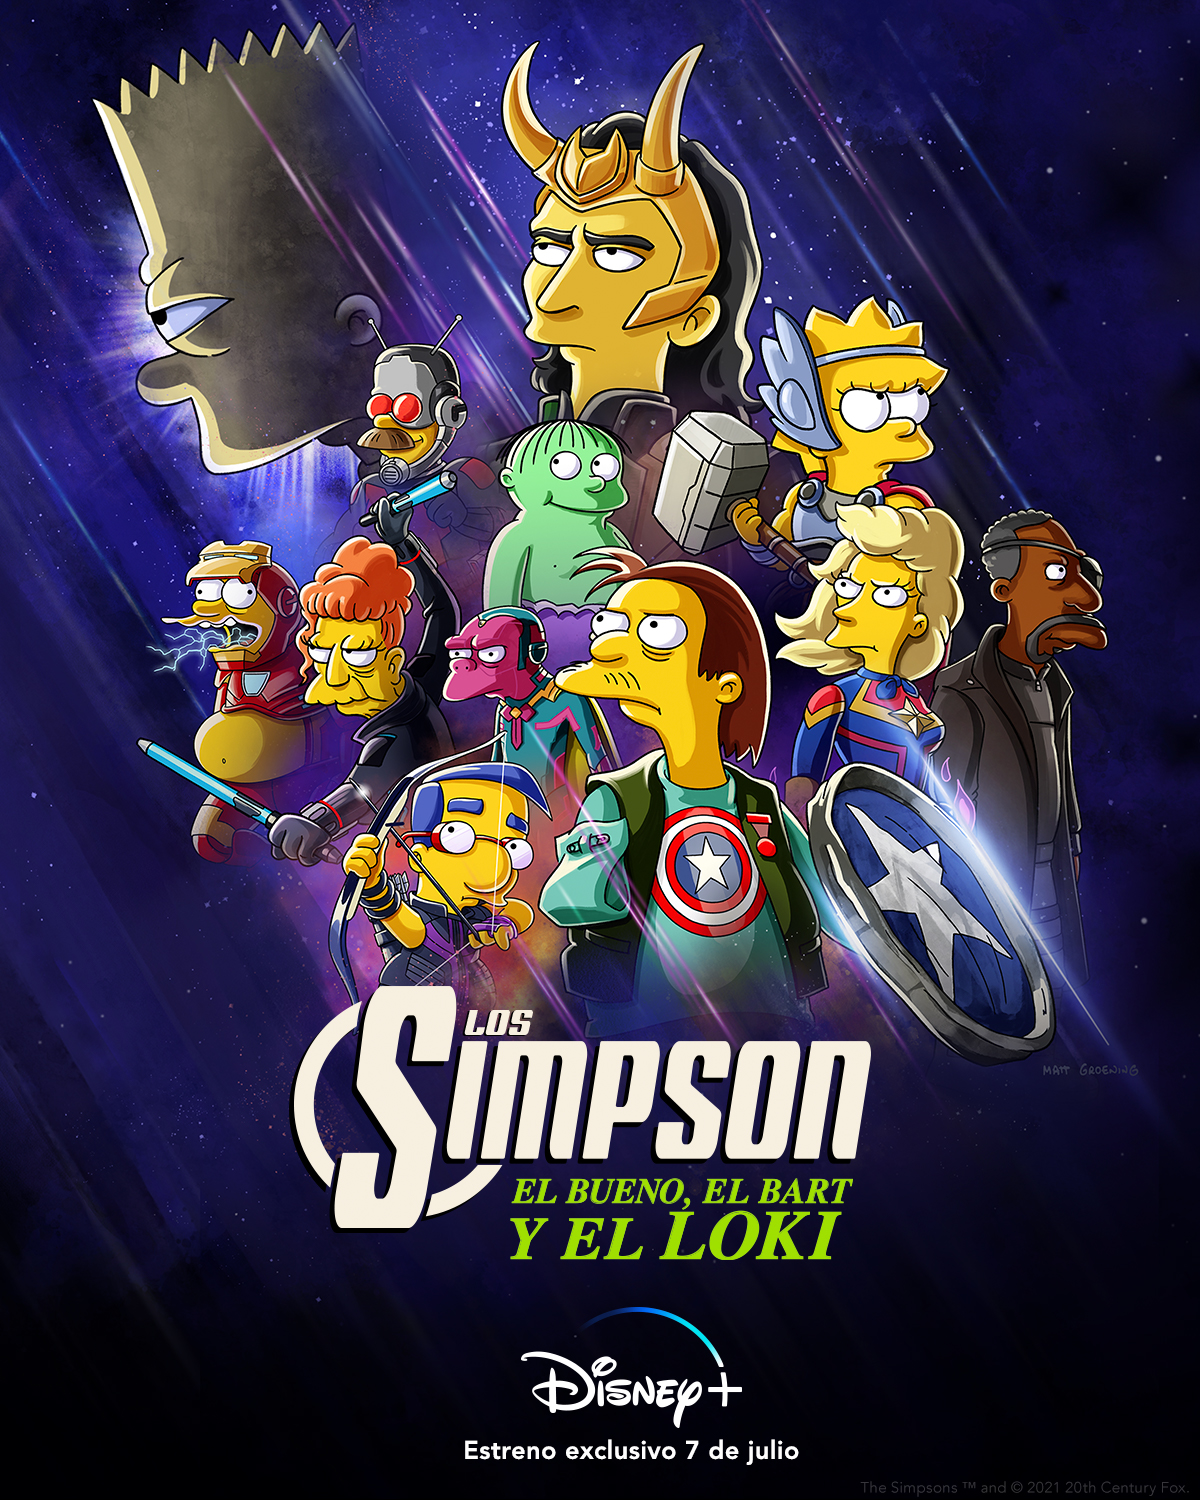 Foto de El Bueno, El Bart y El Loki, un nuevo corto de Los Simpson, inspirado en el Universo Cinematográfico de Marvel